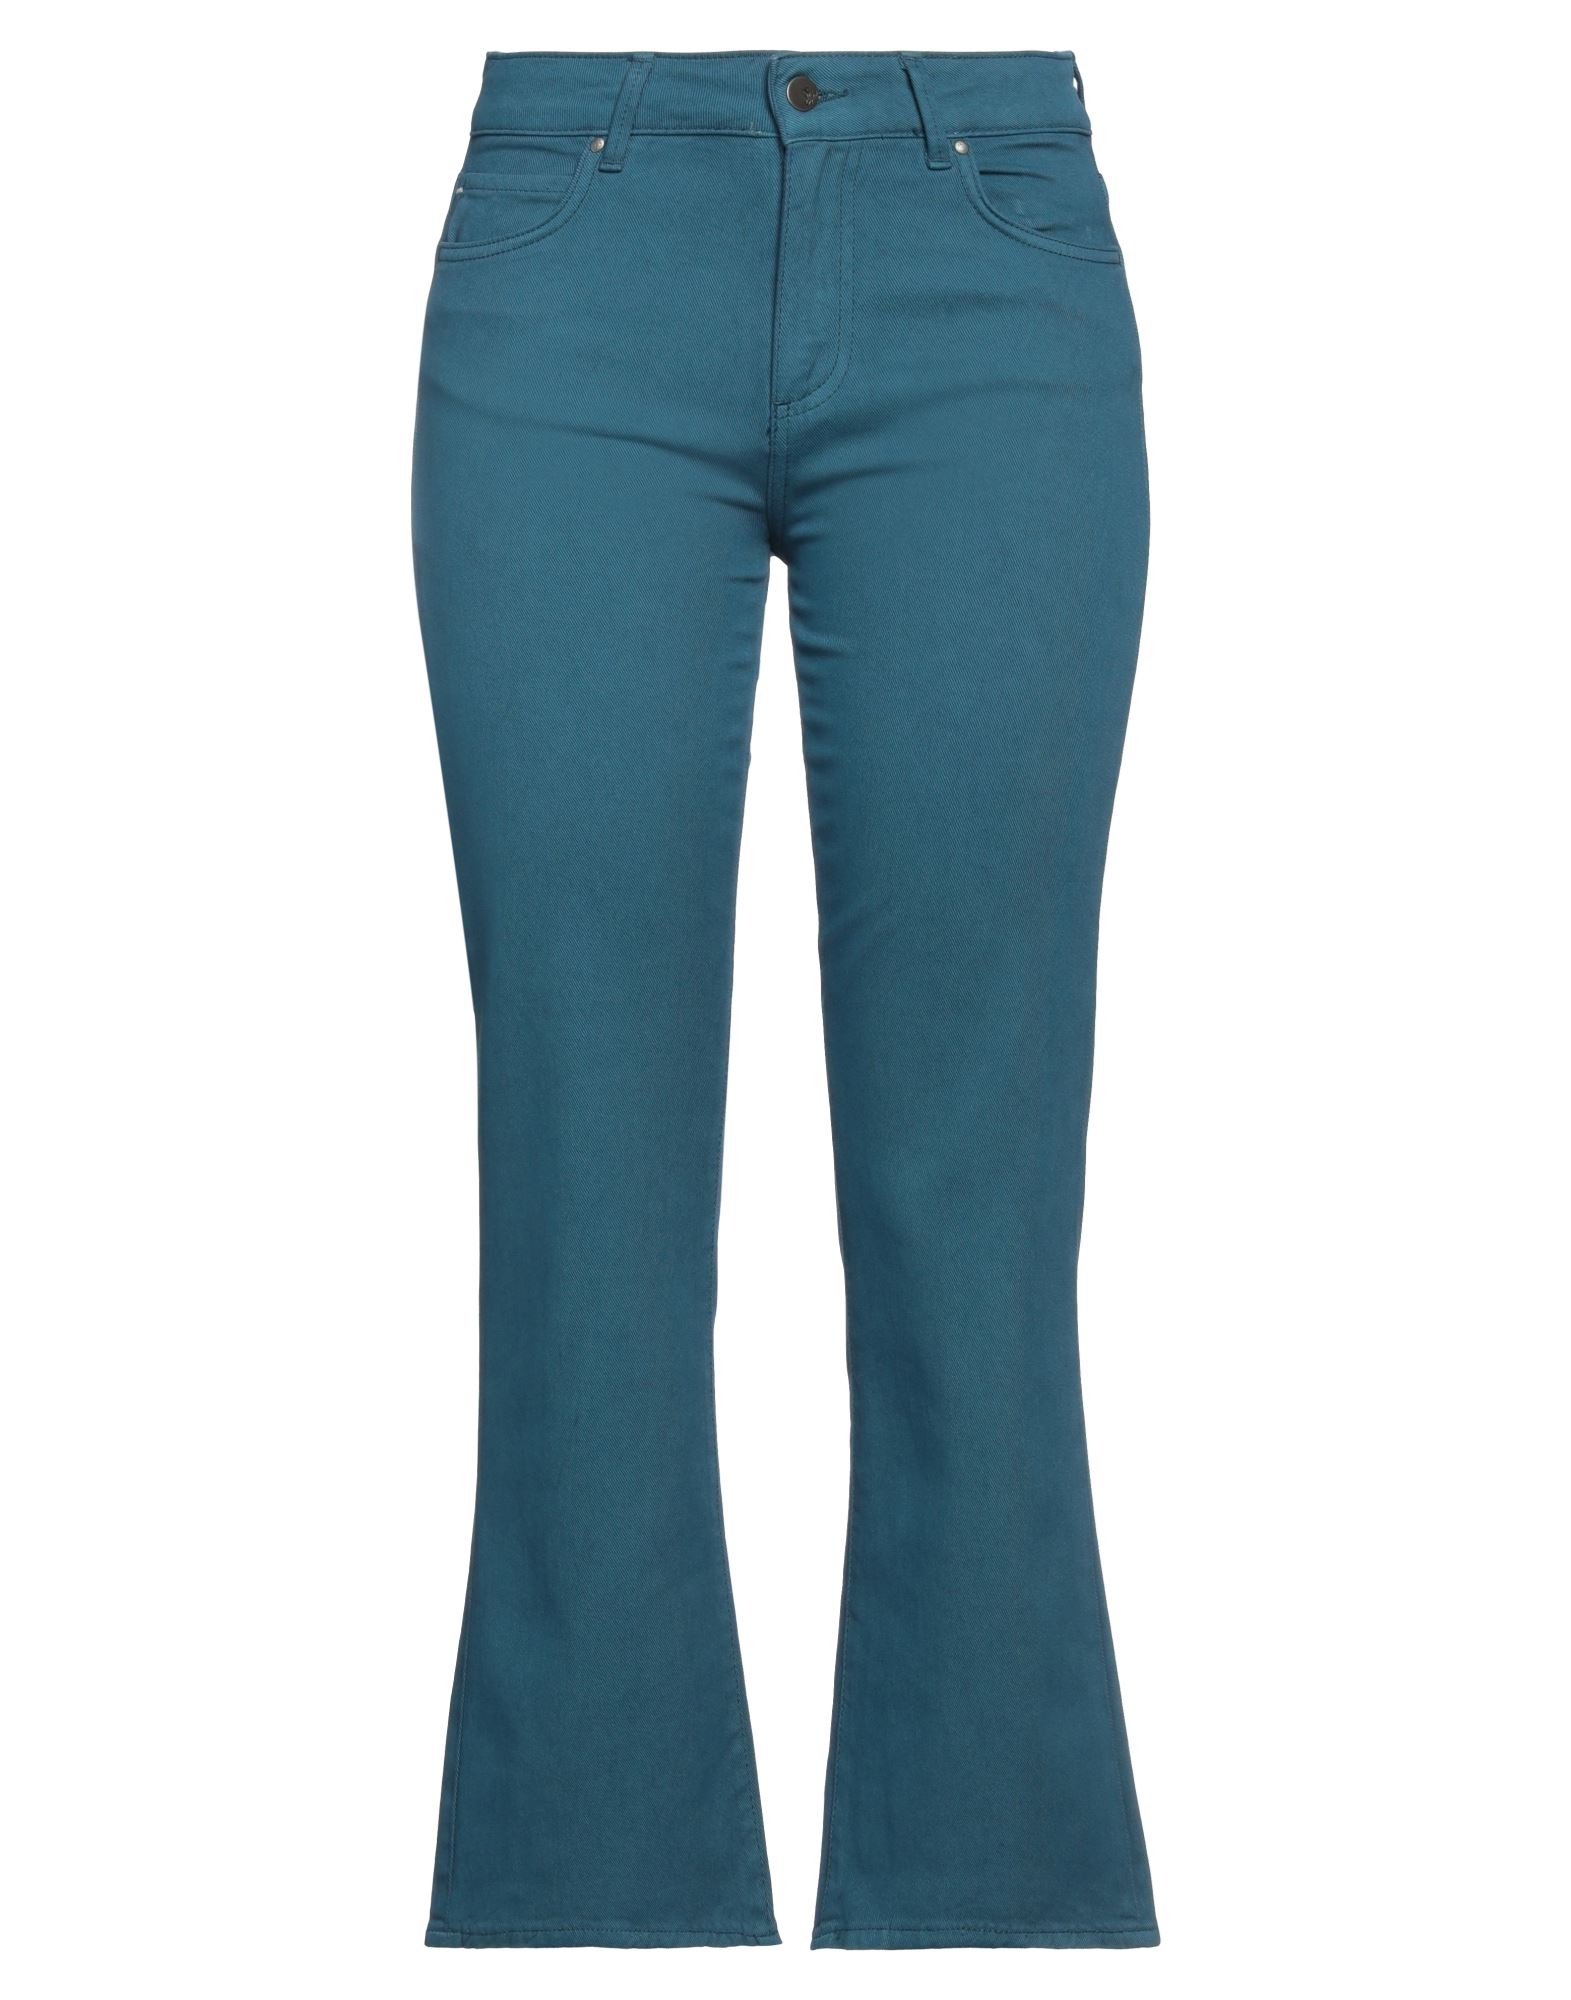 CIGALA'S Jeanshose Damen Blaugrau von CIGALA'S